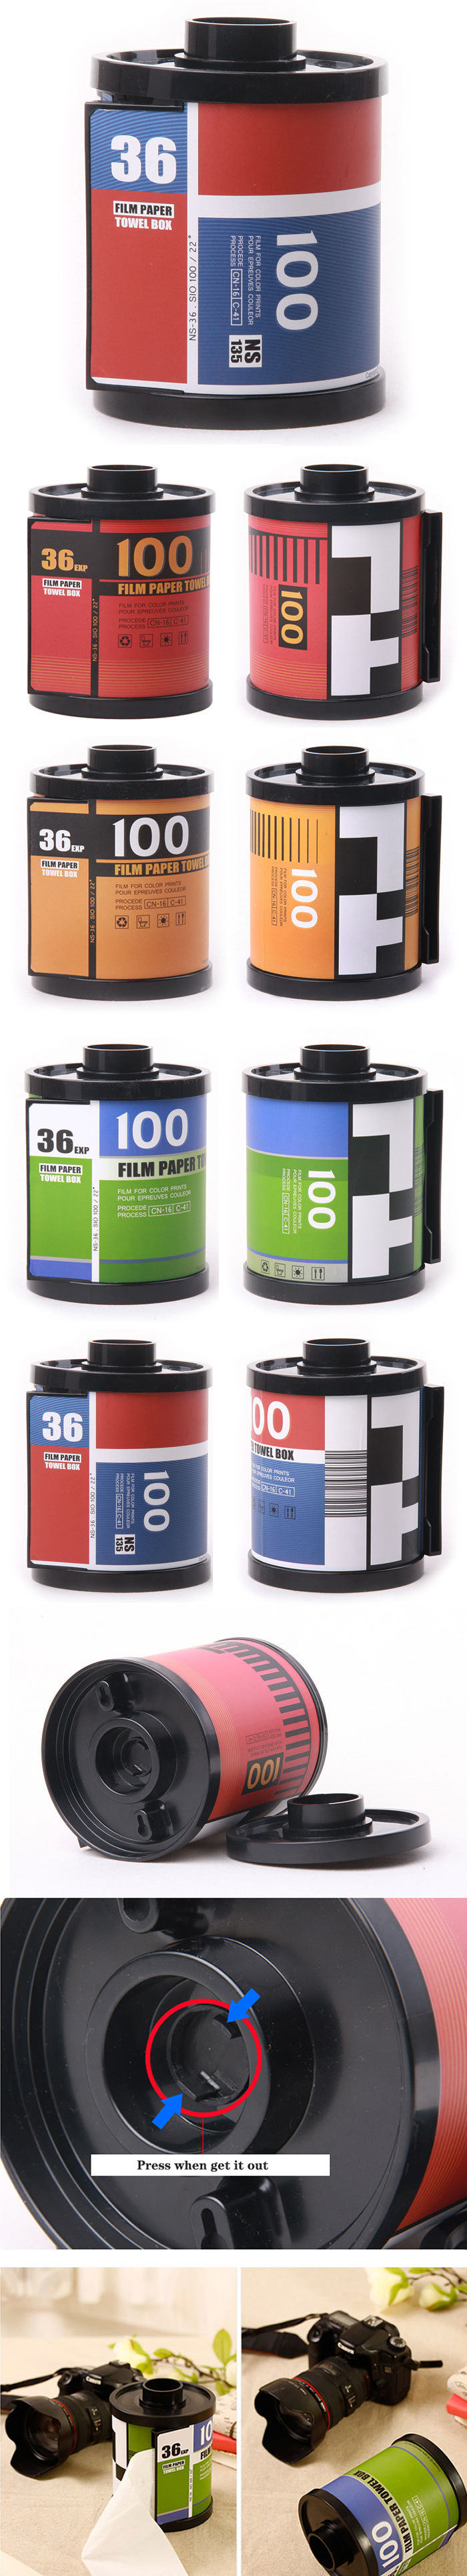 Classical-Film-Roll-Tissue-Dispenser-Holder-Tissue-Box-80s 